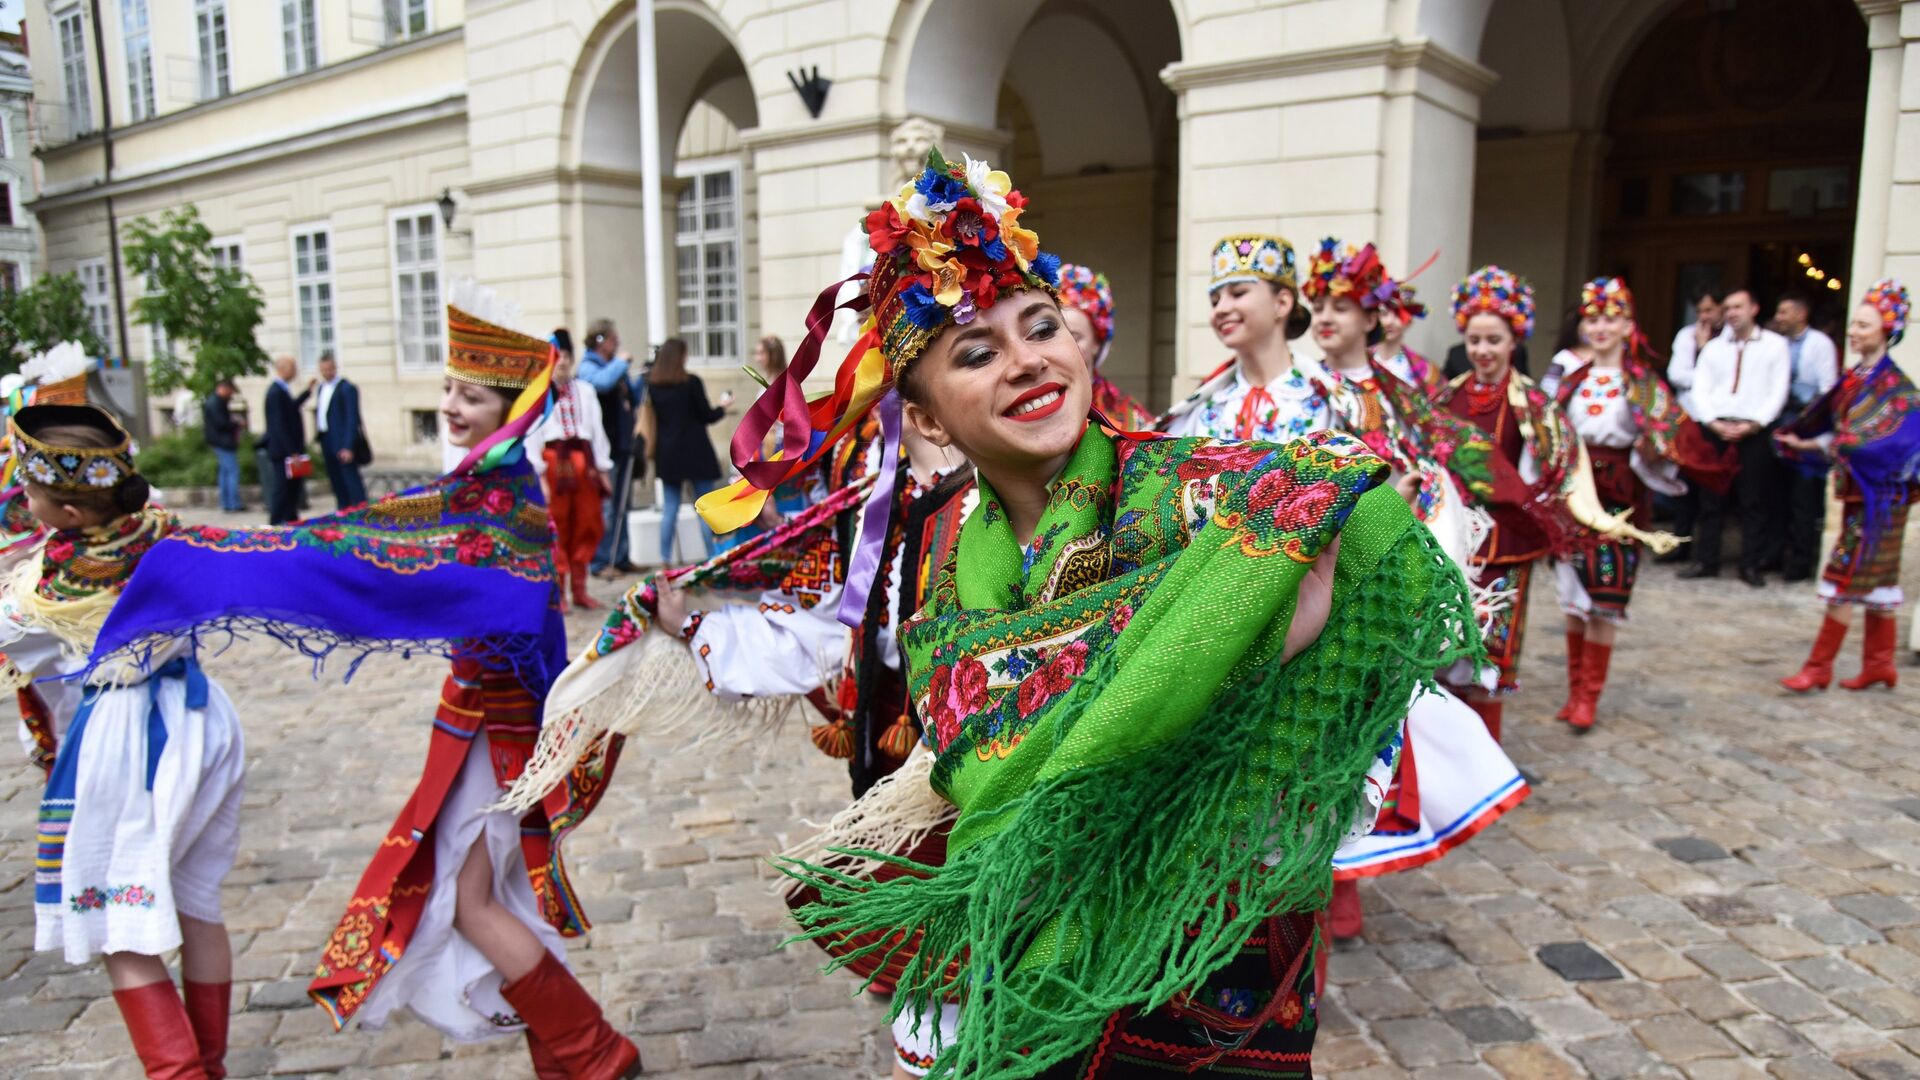 Девушки выступают в традиционной одежде во Львове на празднике в День вышиванки. 17 мая 2018 - РИА Новости, 1920, 26.08.2020